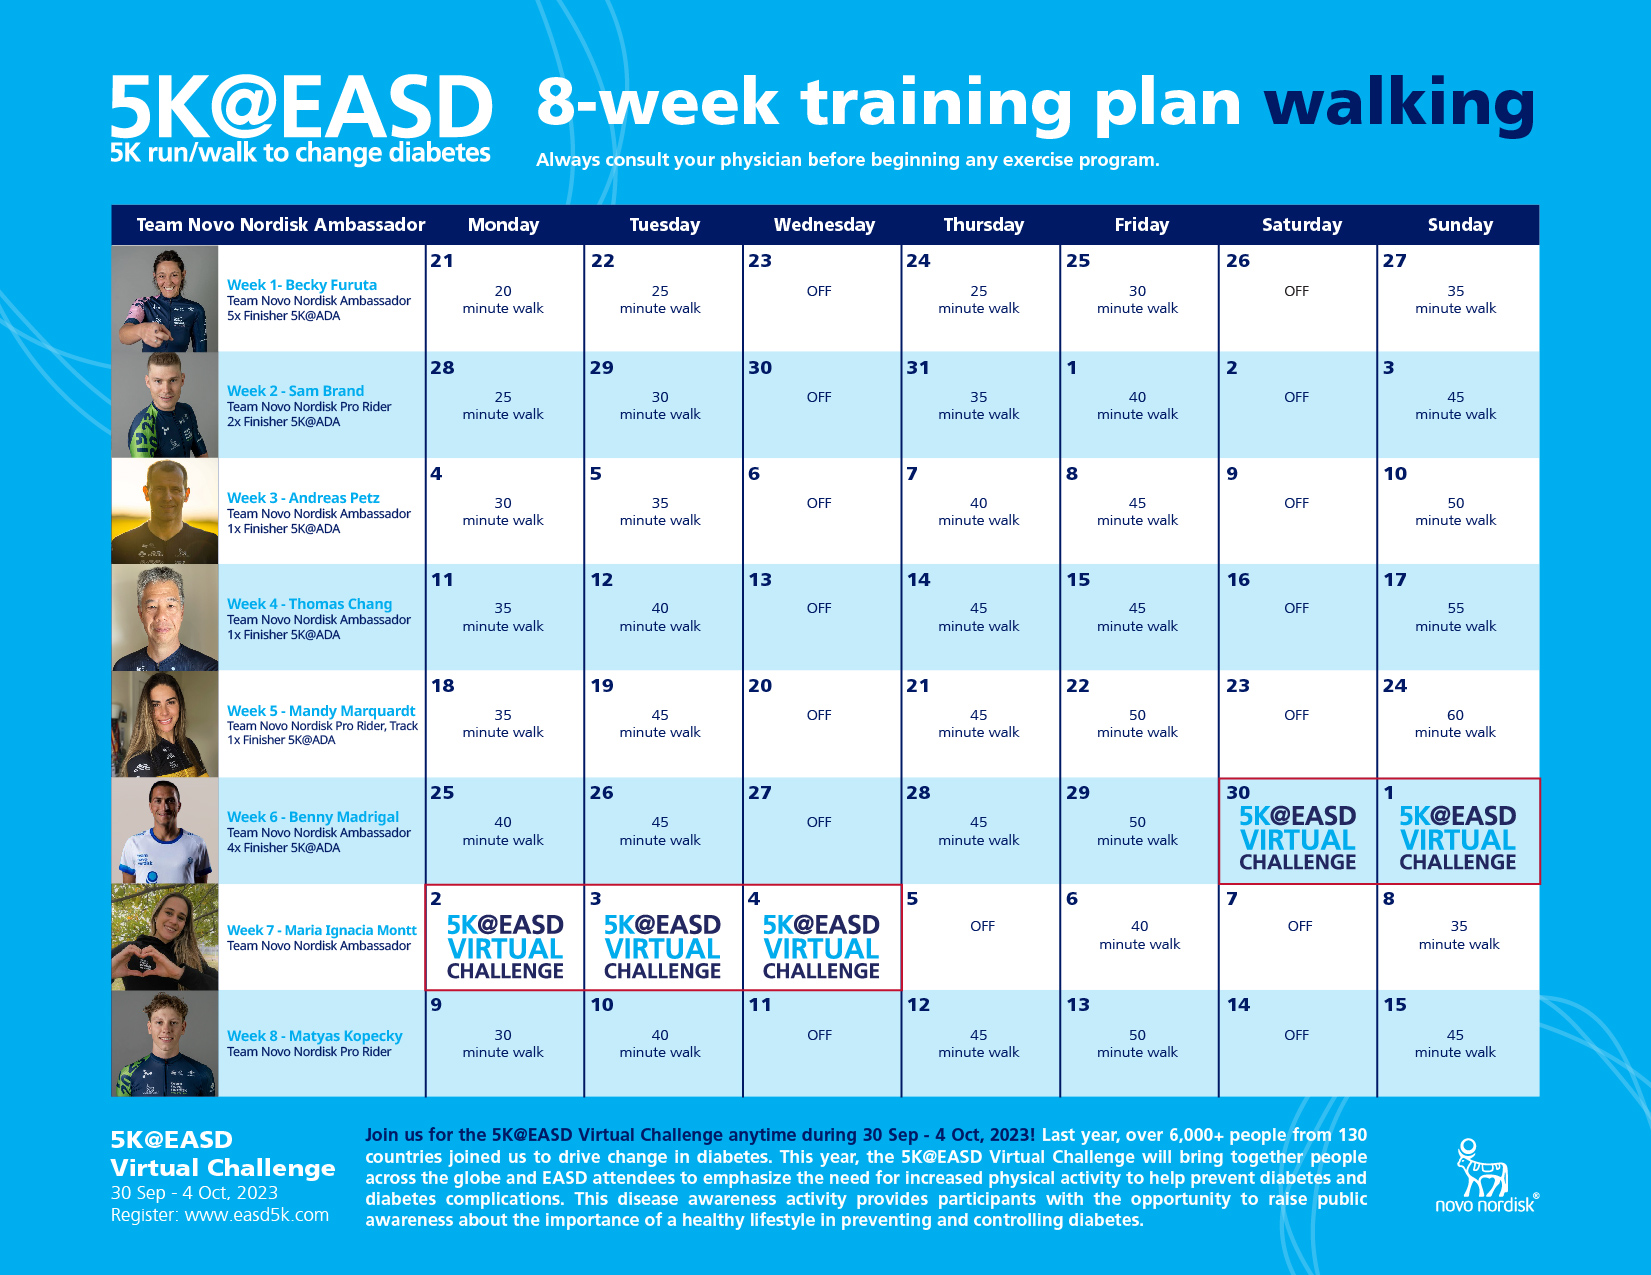 8-Week Walking Training Plan